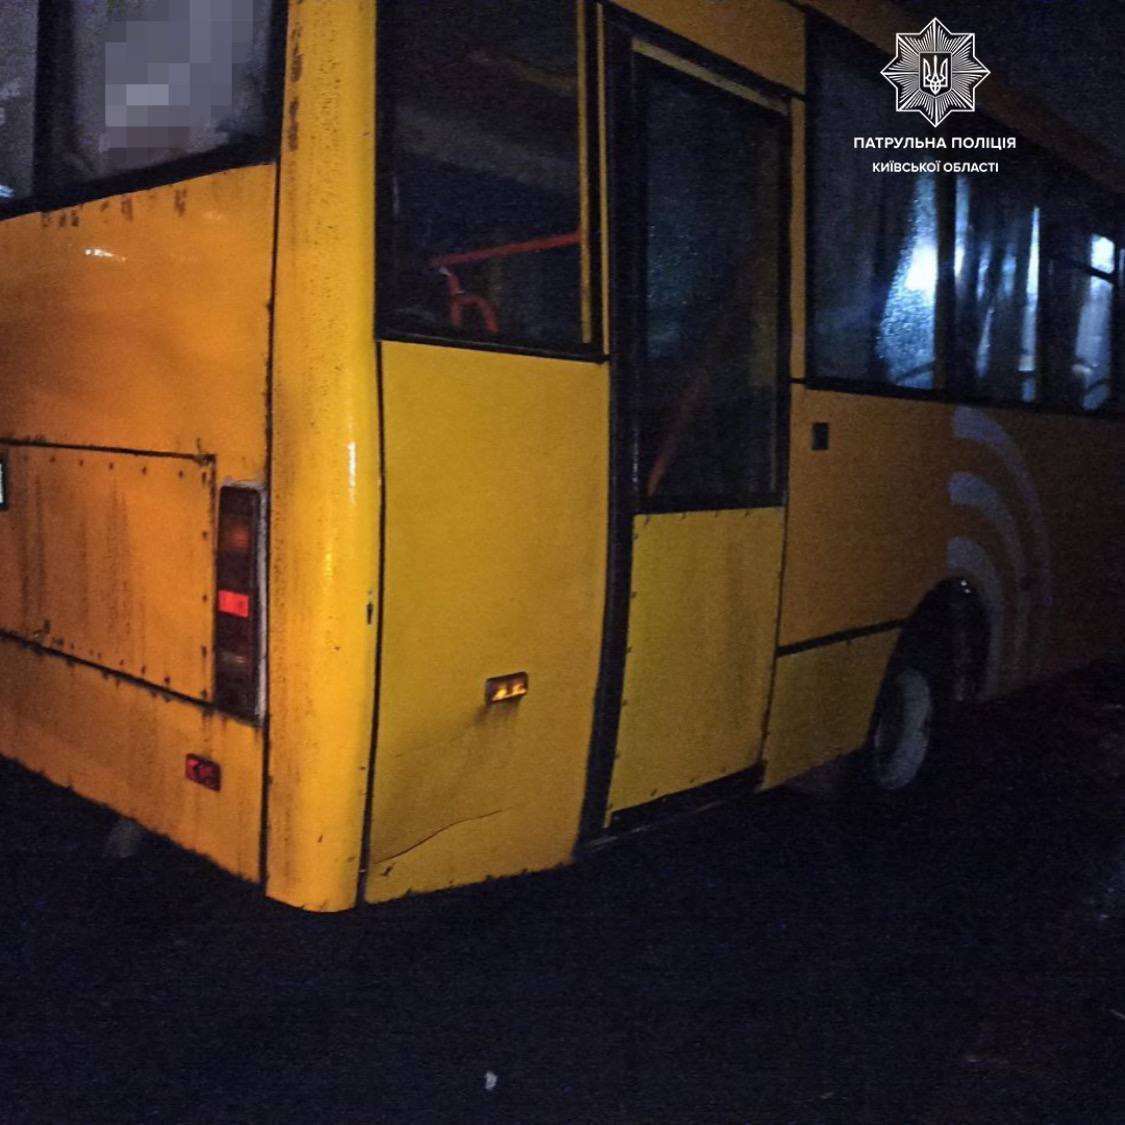 В Борисполе маршрутка протаранила легковушку и поехала дальше: оштрафовали обоих водителей. Фото